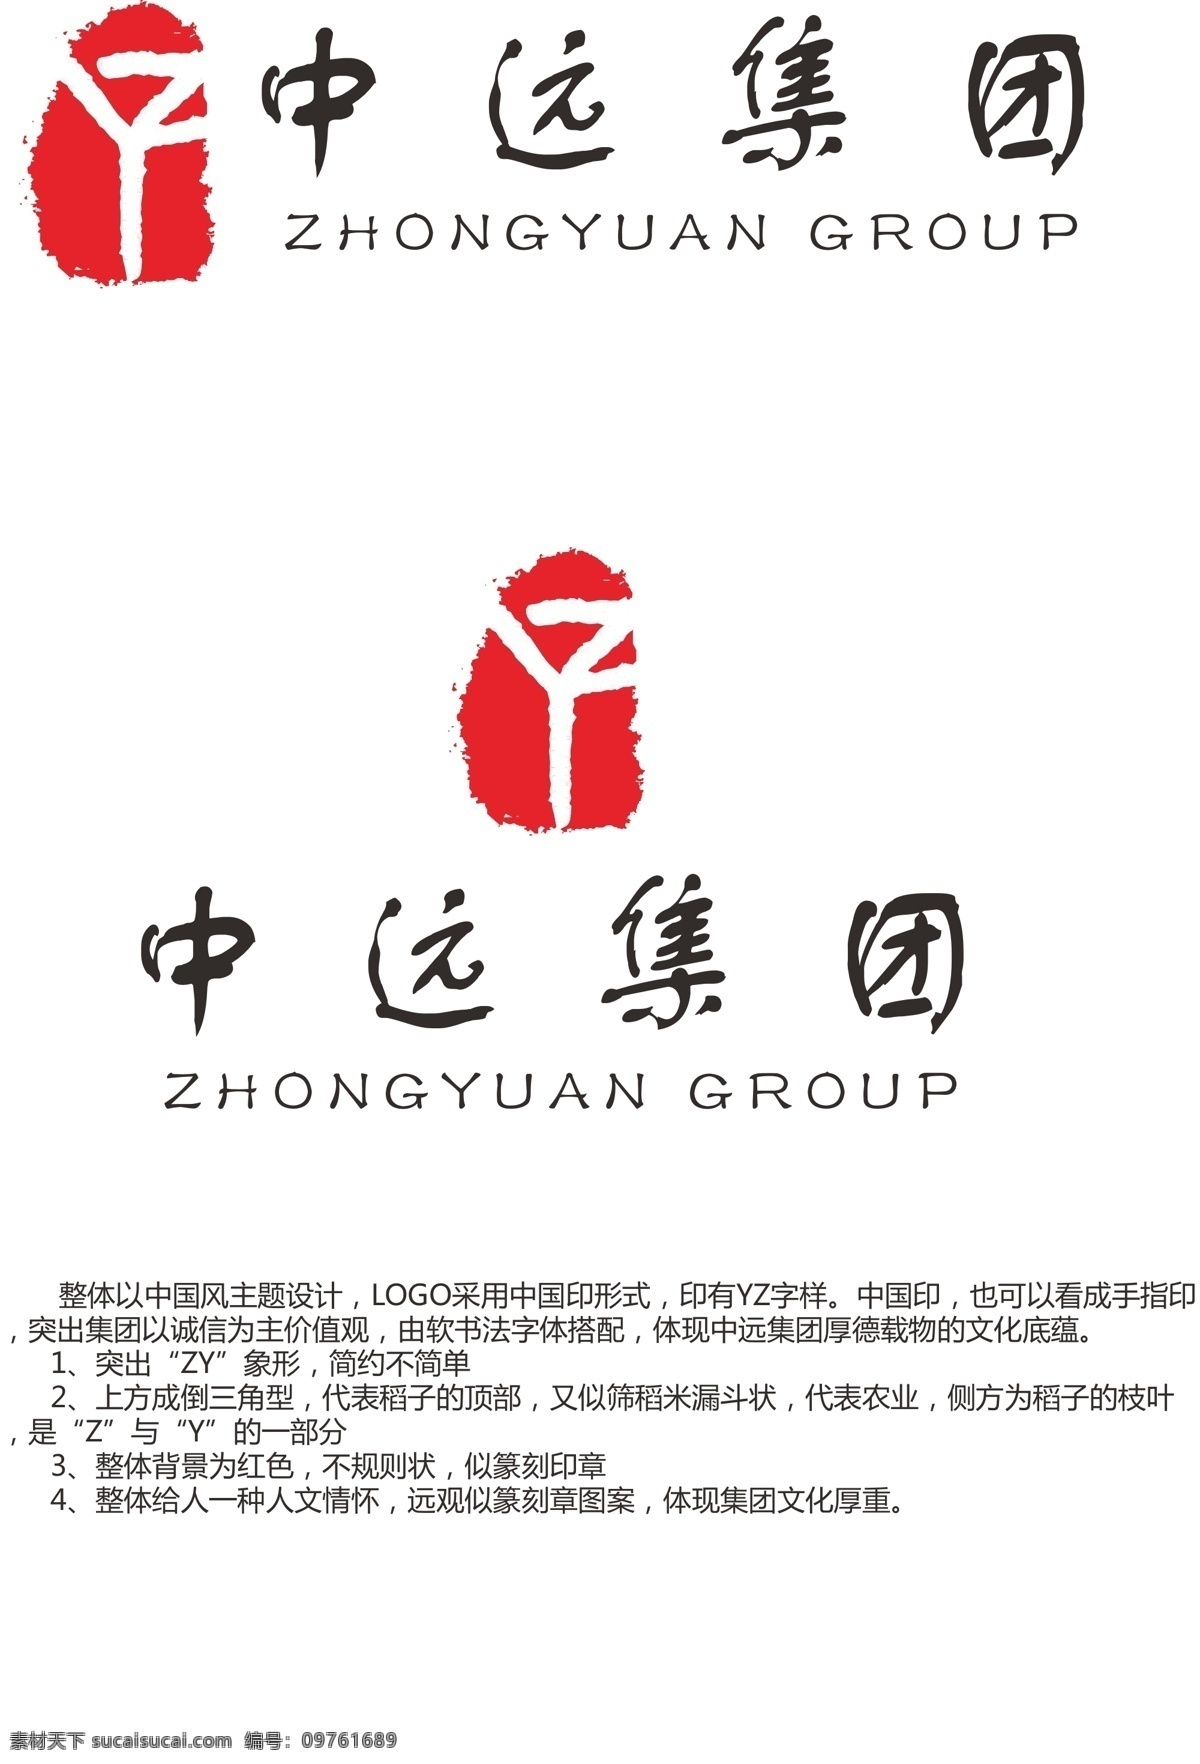 中远集团 logo2 字母 logo 标识设计 原创 企业logo zy 红色 圆形 中 简单 大气 中国印 中国风 logo红色 白色